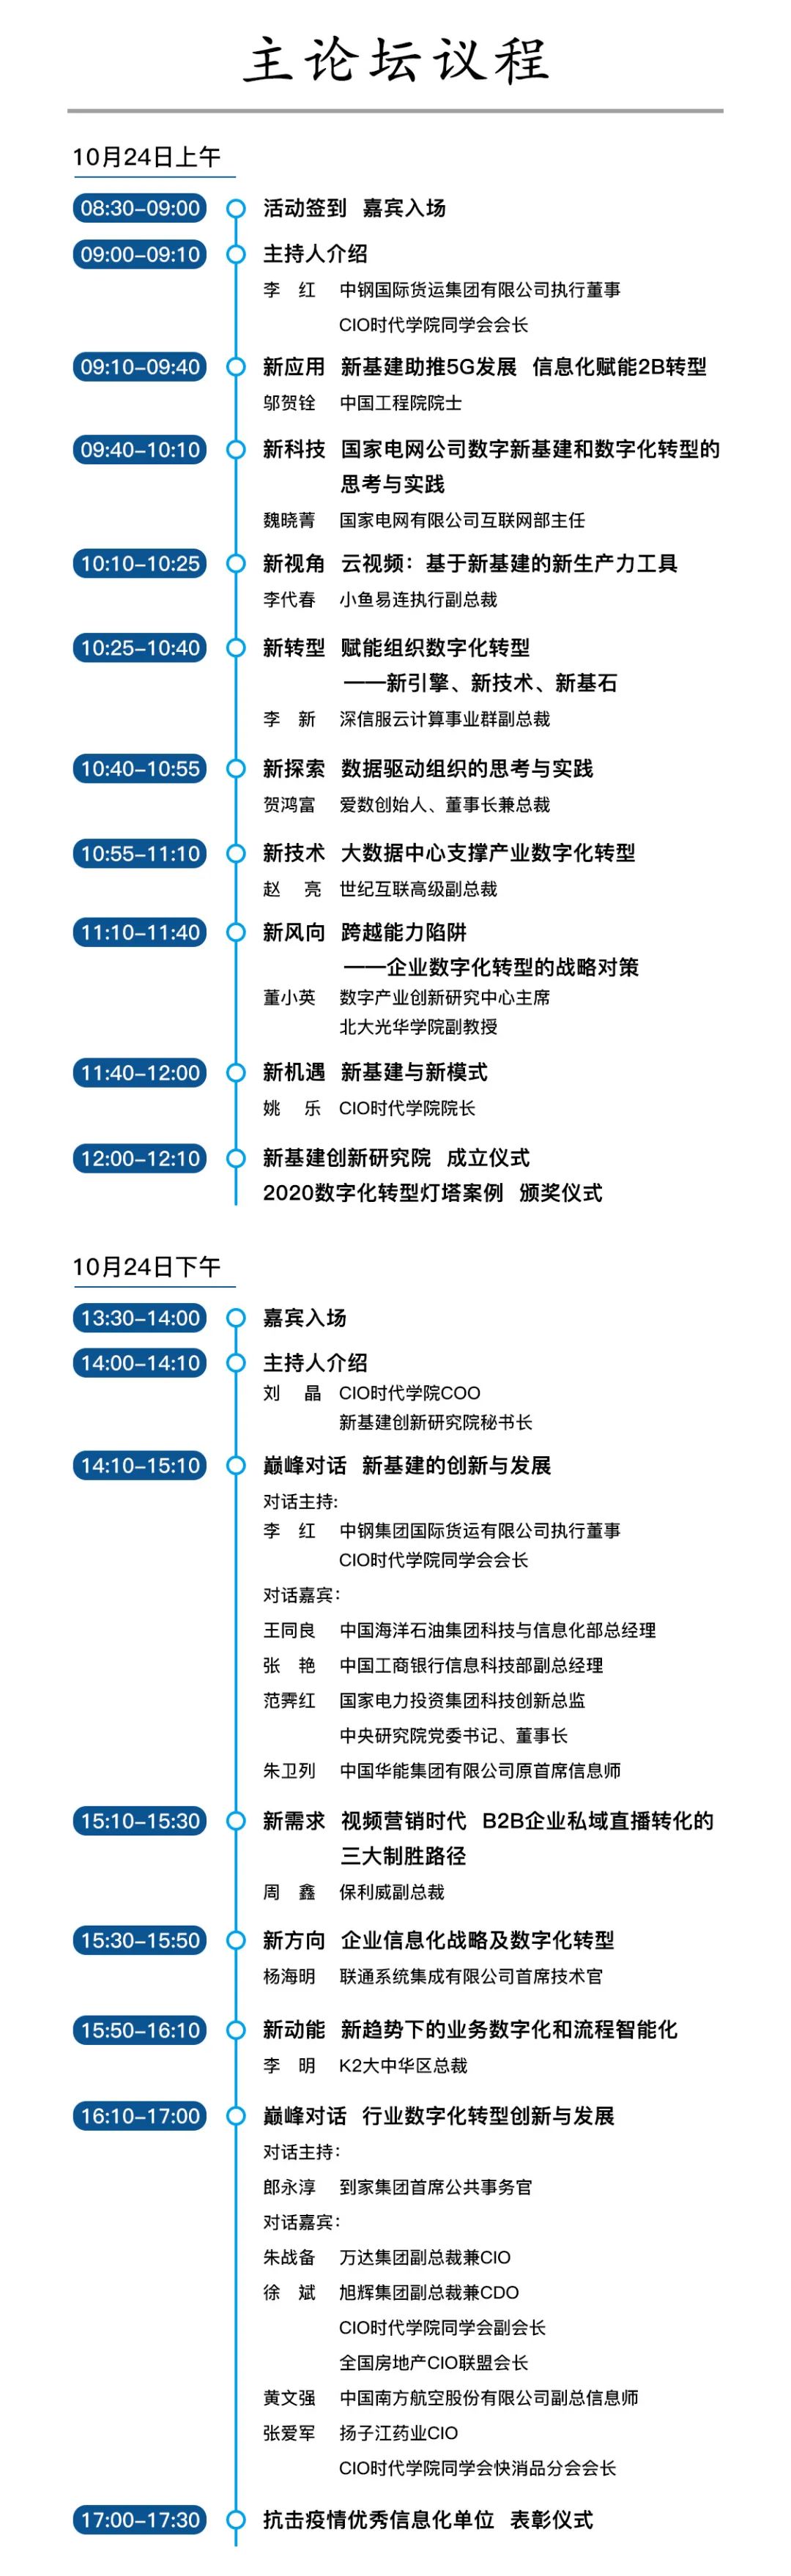 第六届中国行业互联网大会日程发布！保利威副总裁周鑫受邀分享